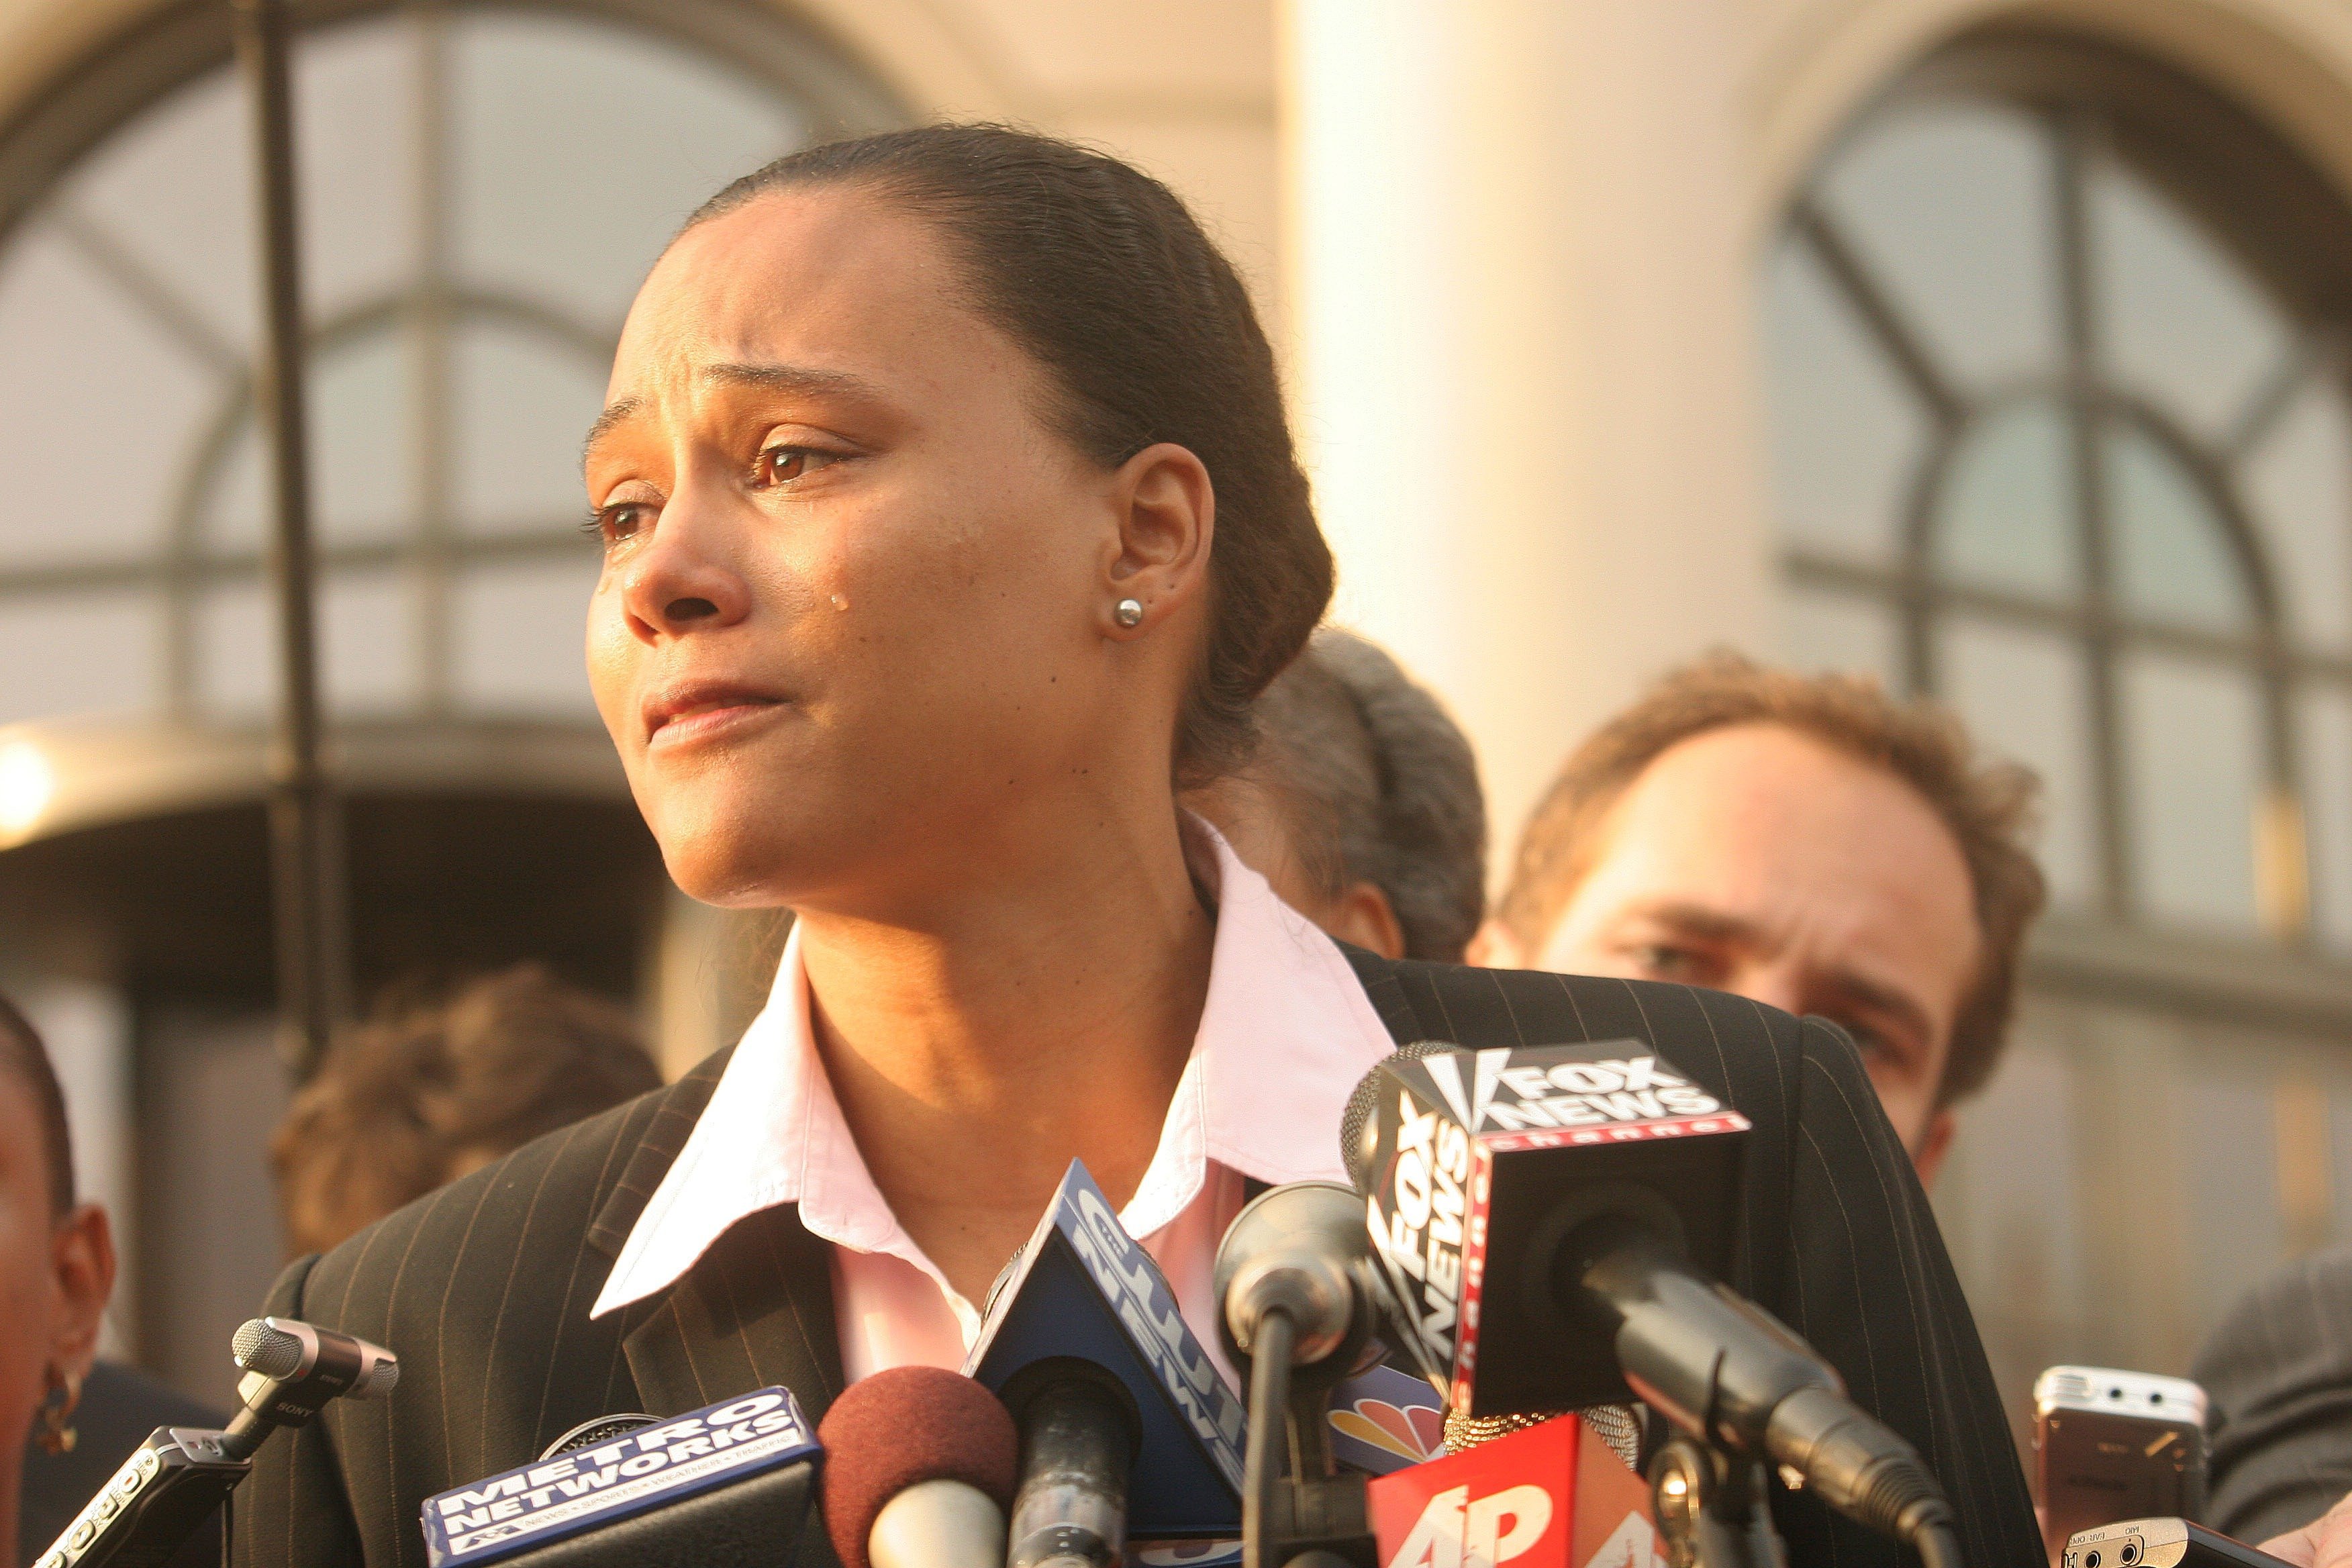 Marion Jones habla a los medios de comunicación frente a un tribunal federal de los Estados Unidos el 5 de octubre de 2007 en White Plains, NY. | Foto: Getty Images